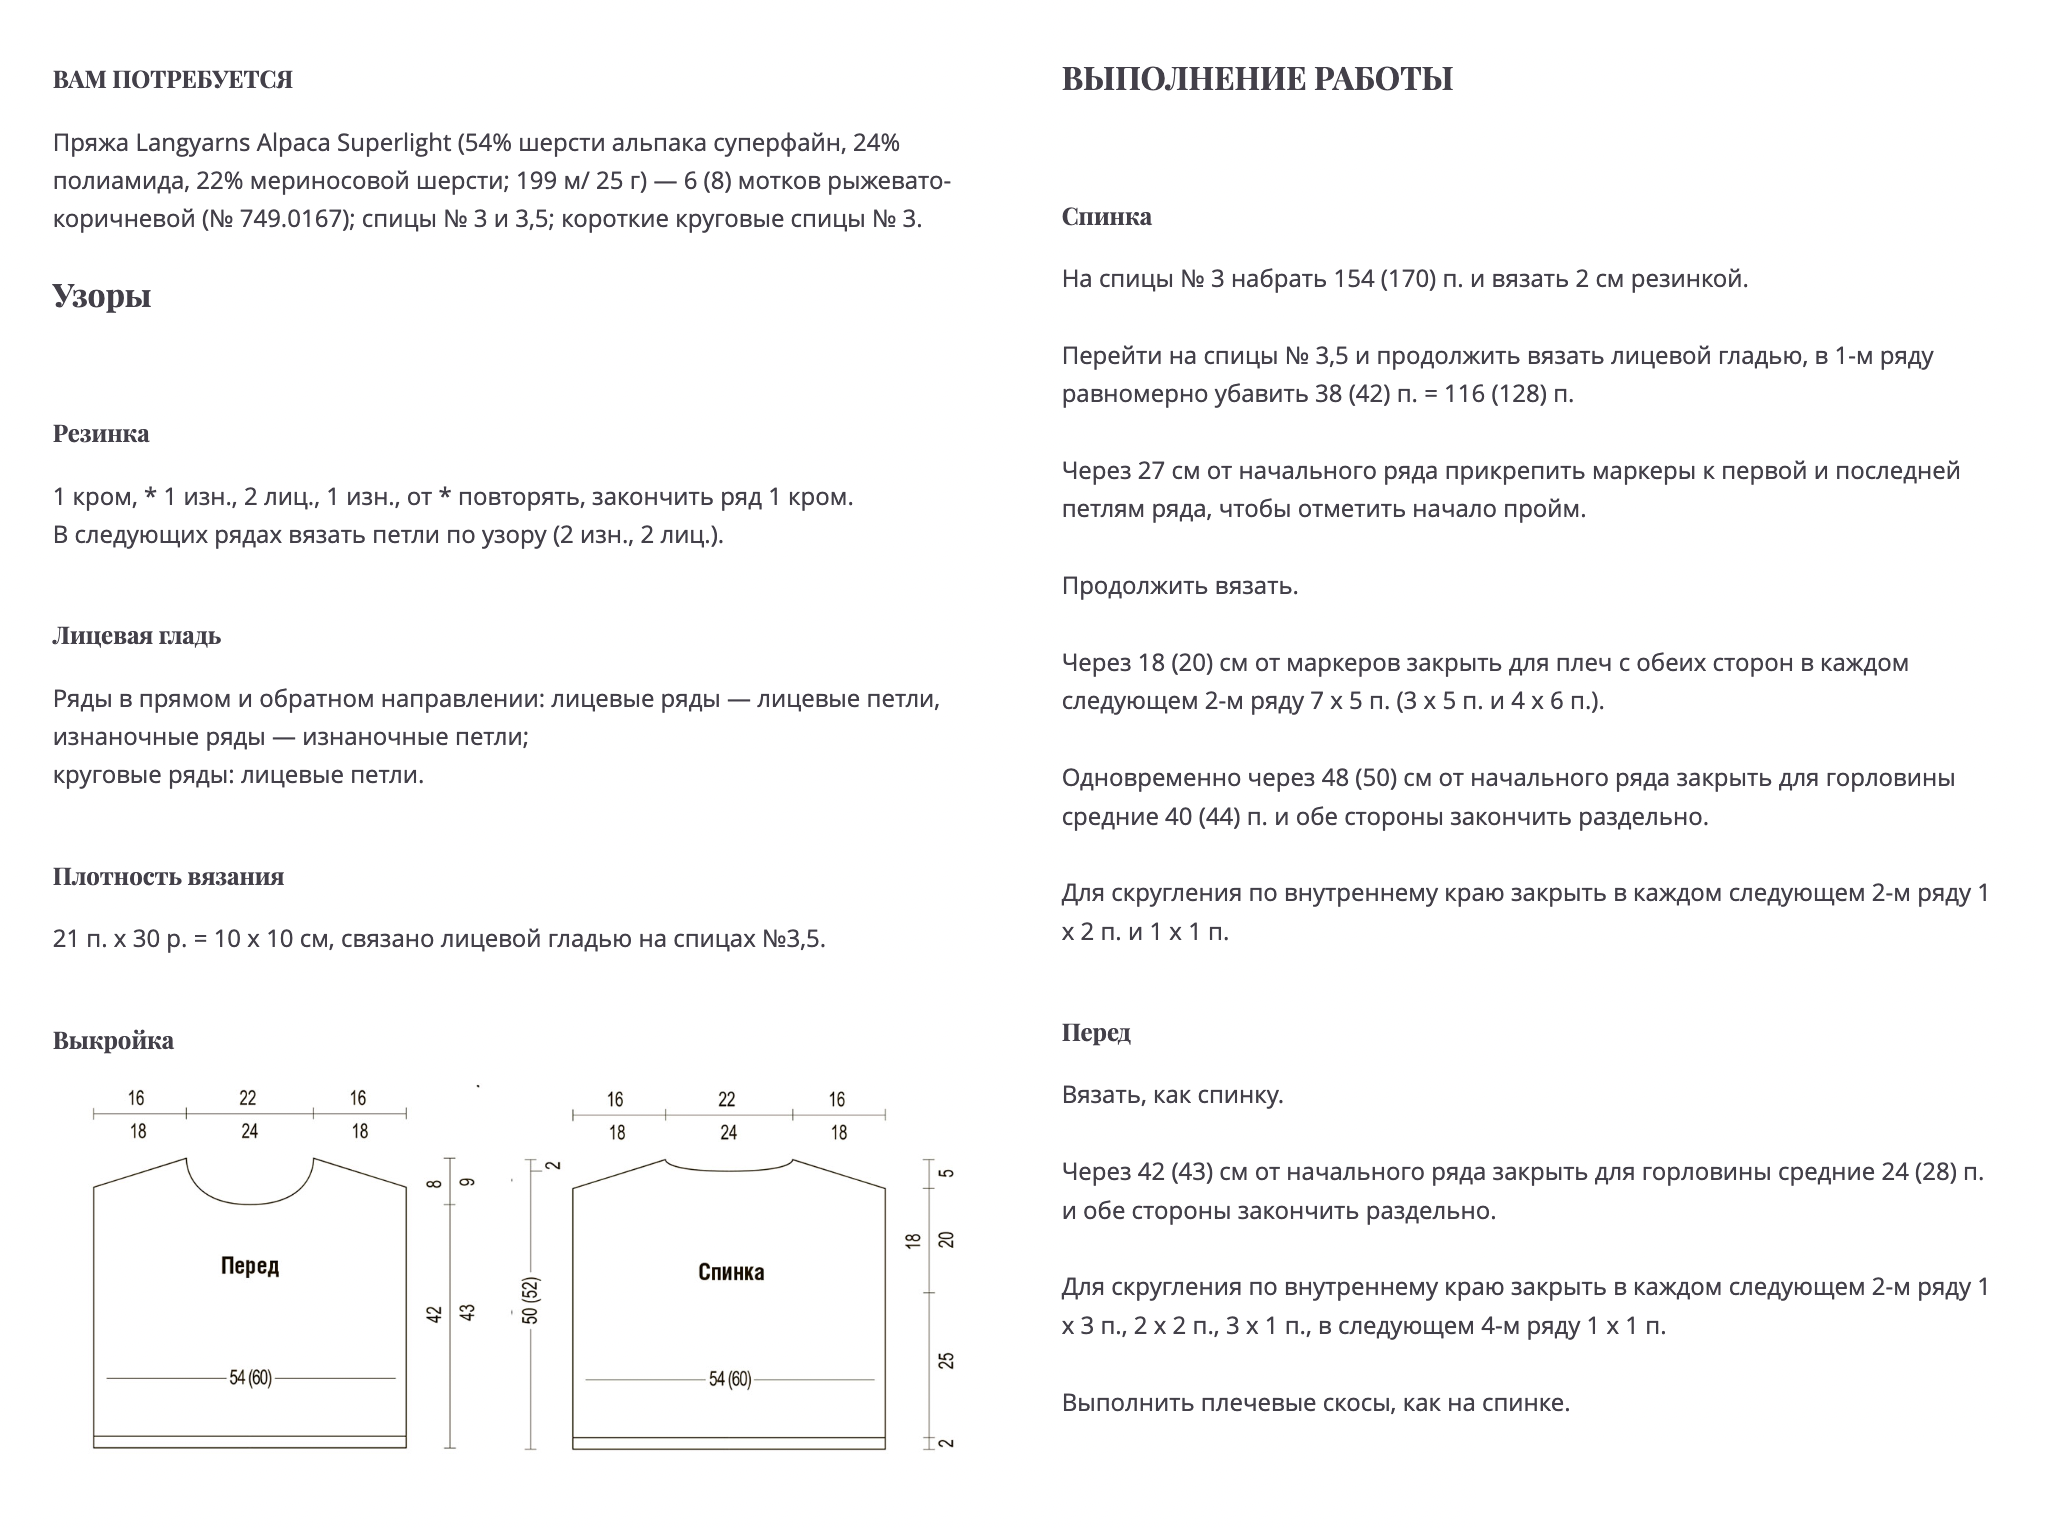 Описание стильного джемпера с завязывающимися рукавами. В конце есть отдельный блок про сборку. Источник: burdastyle.ru